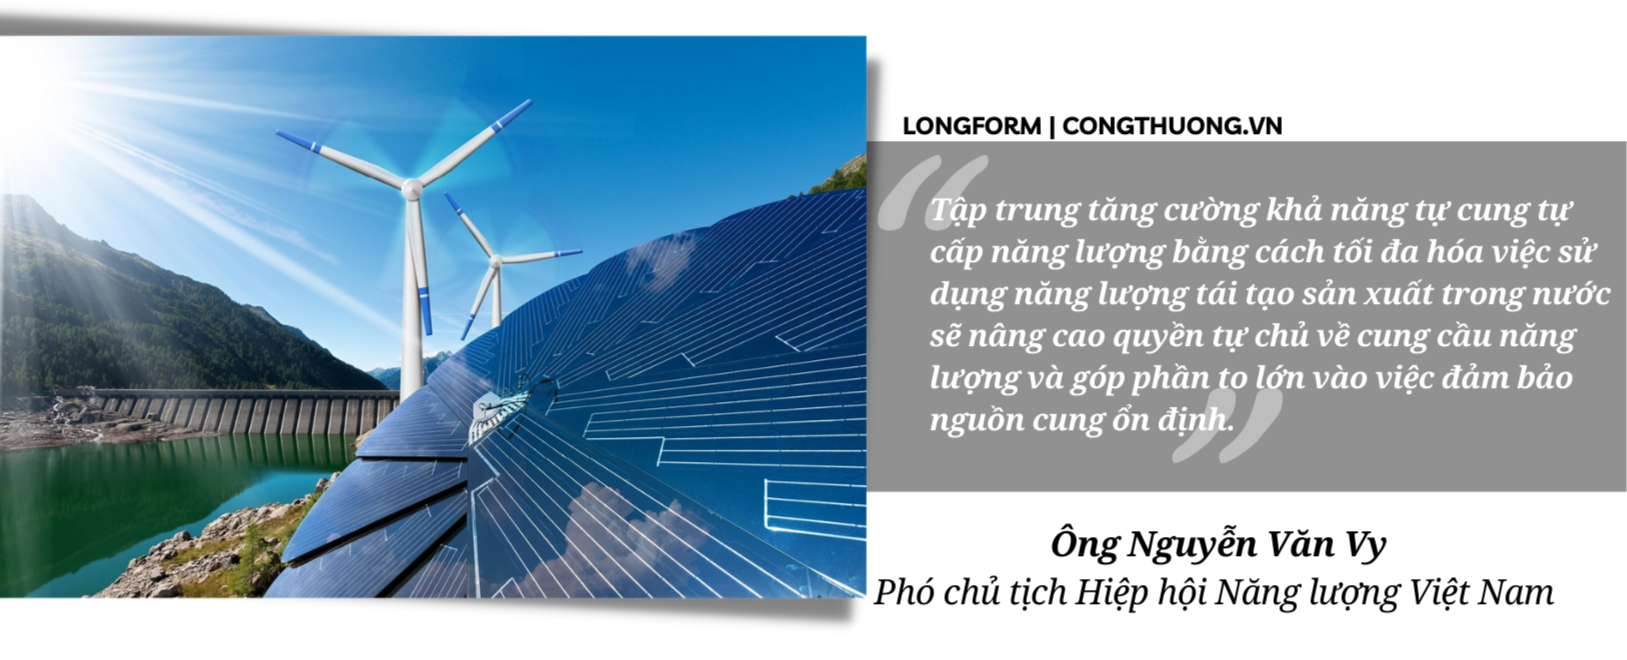 Longform | Bài 4: Các chuyên gia kinh tế khuyến nghị bài học và giải pháp cho Việt Nam!